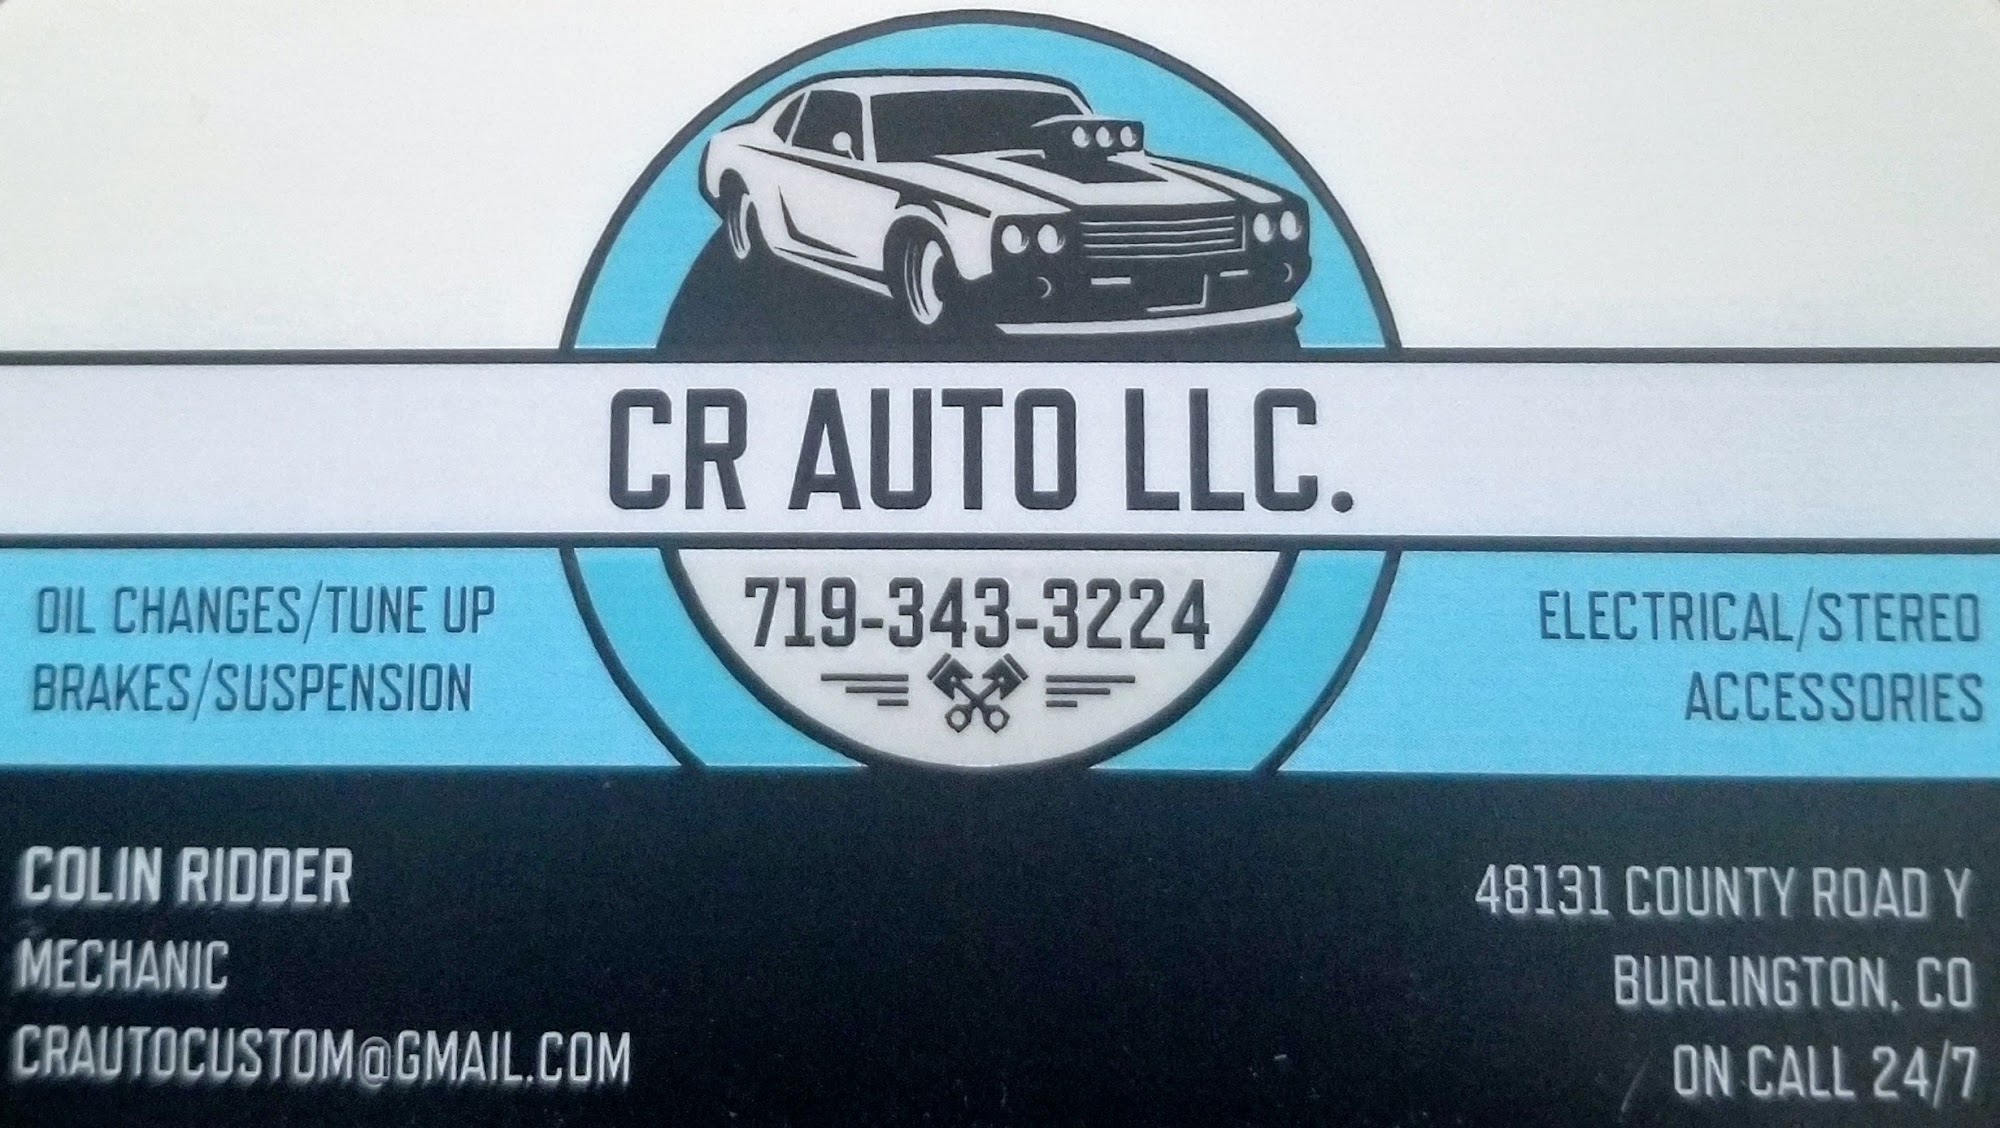 CR AUTO LLC.